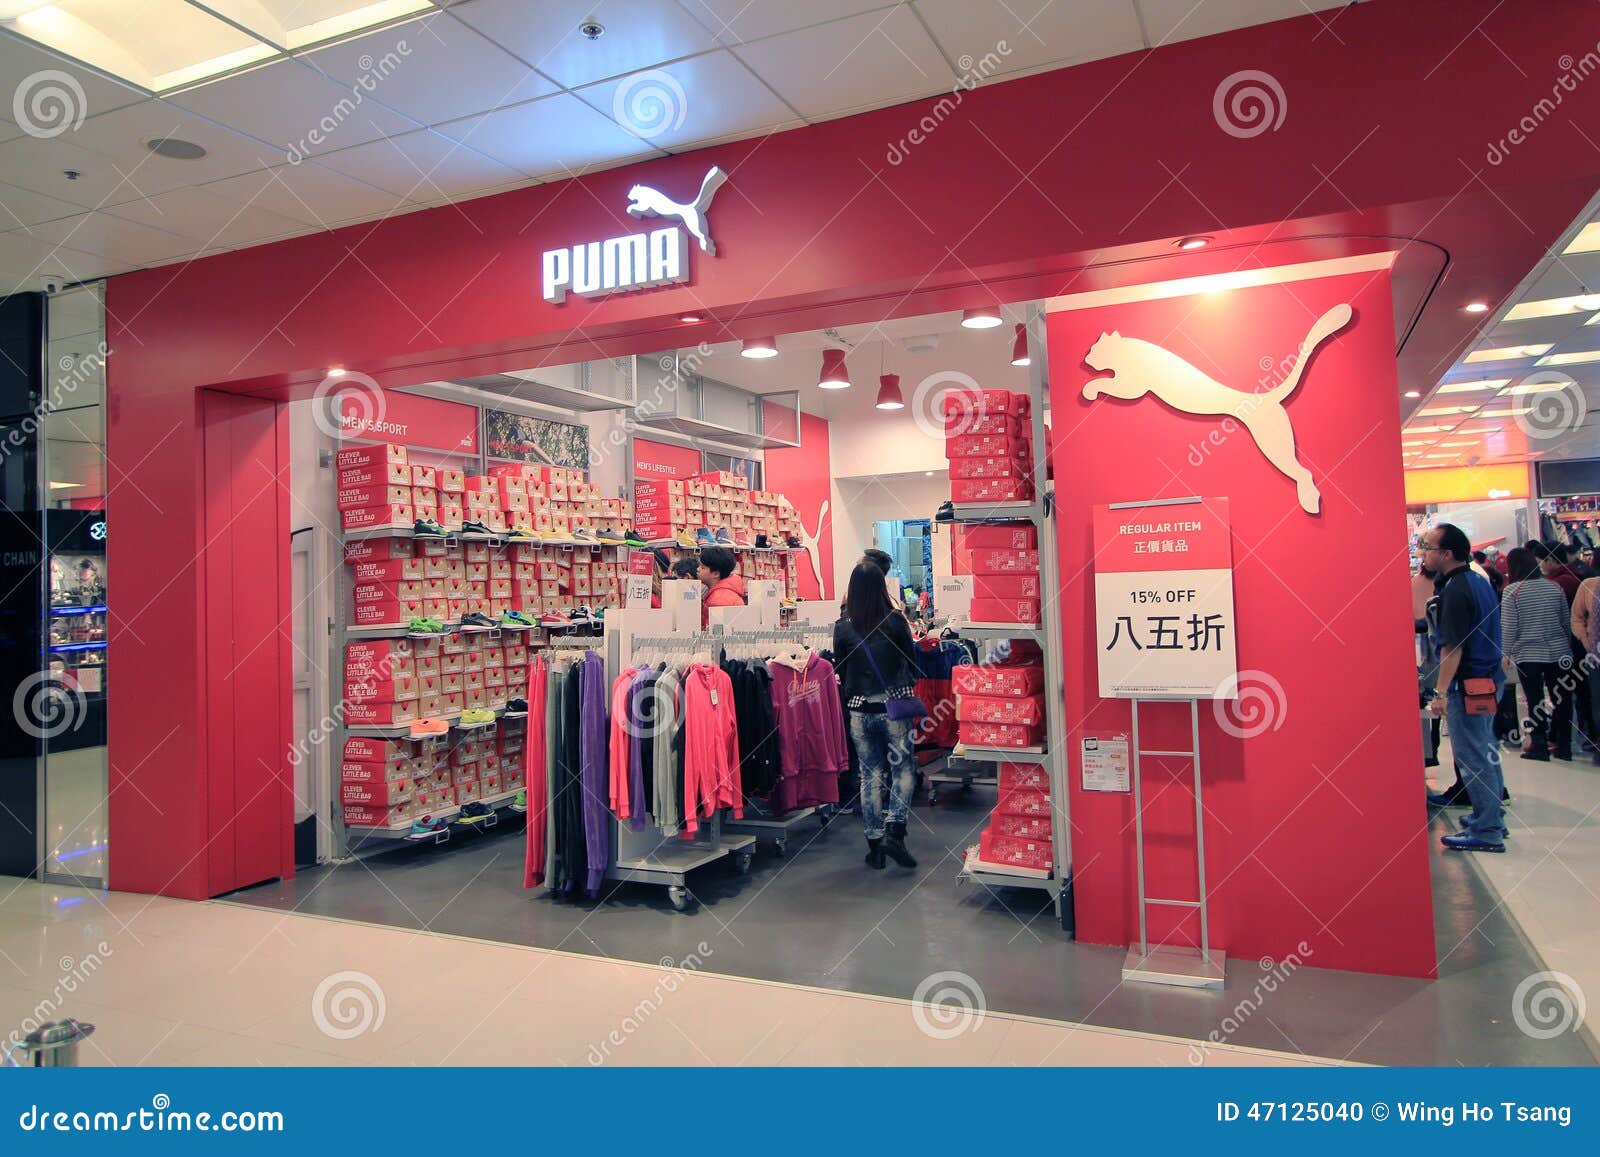 Puma shop in Hong Kong editorial image 